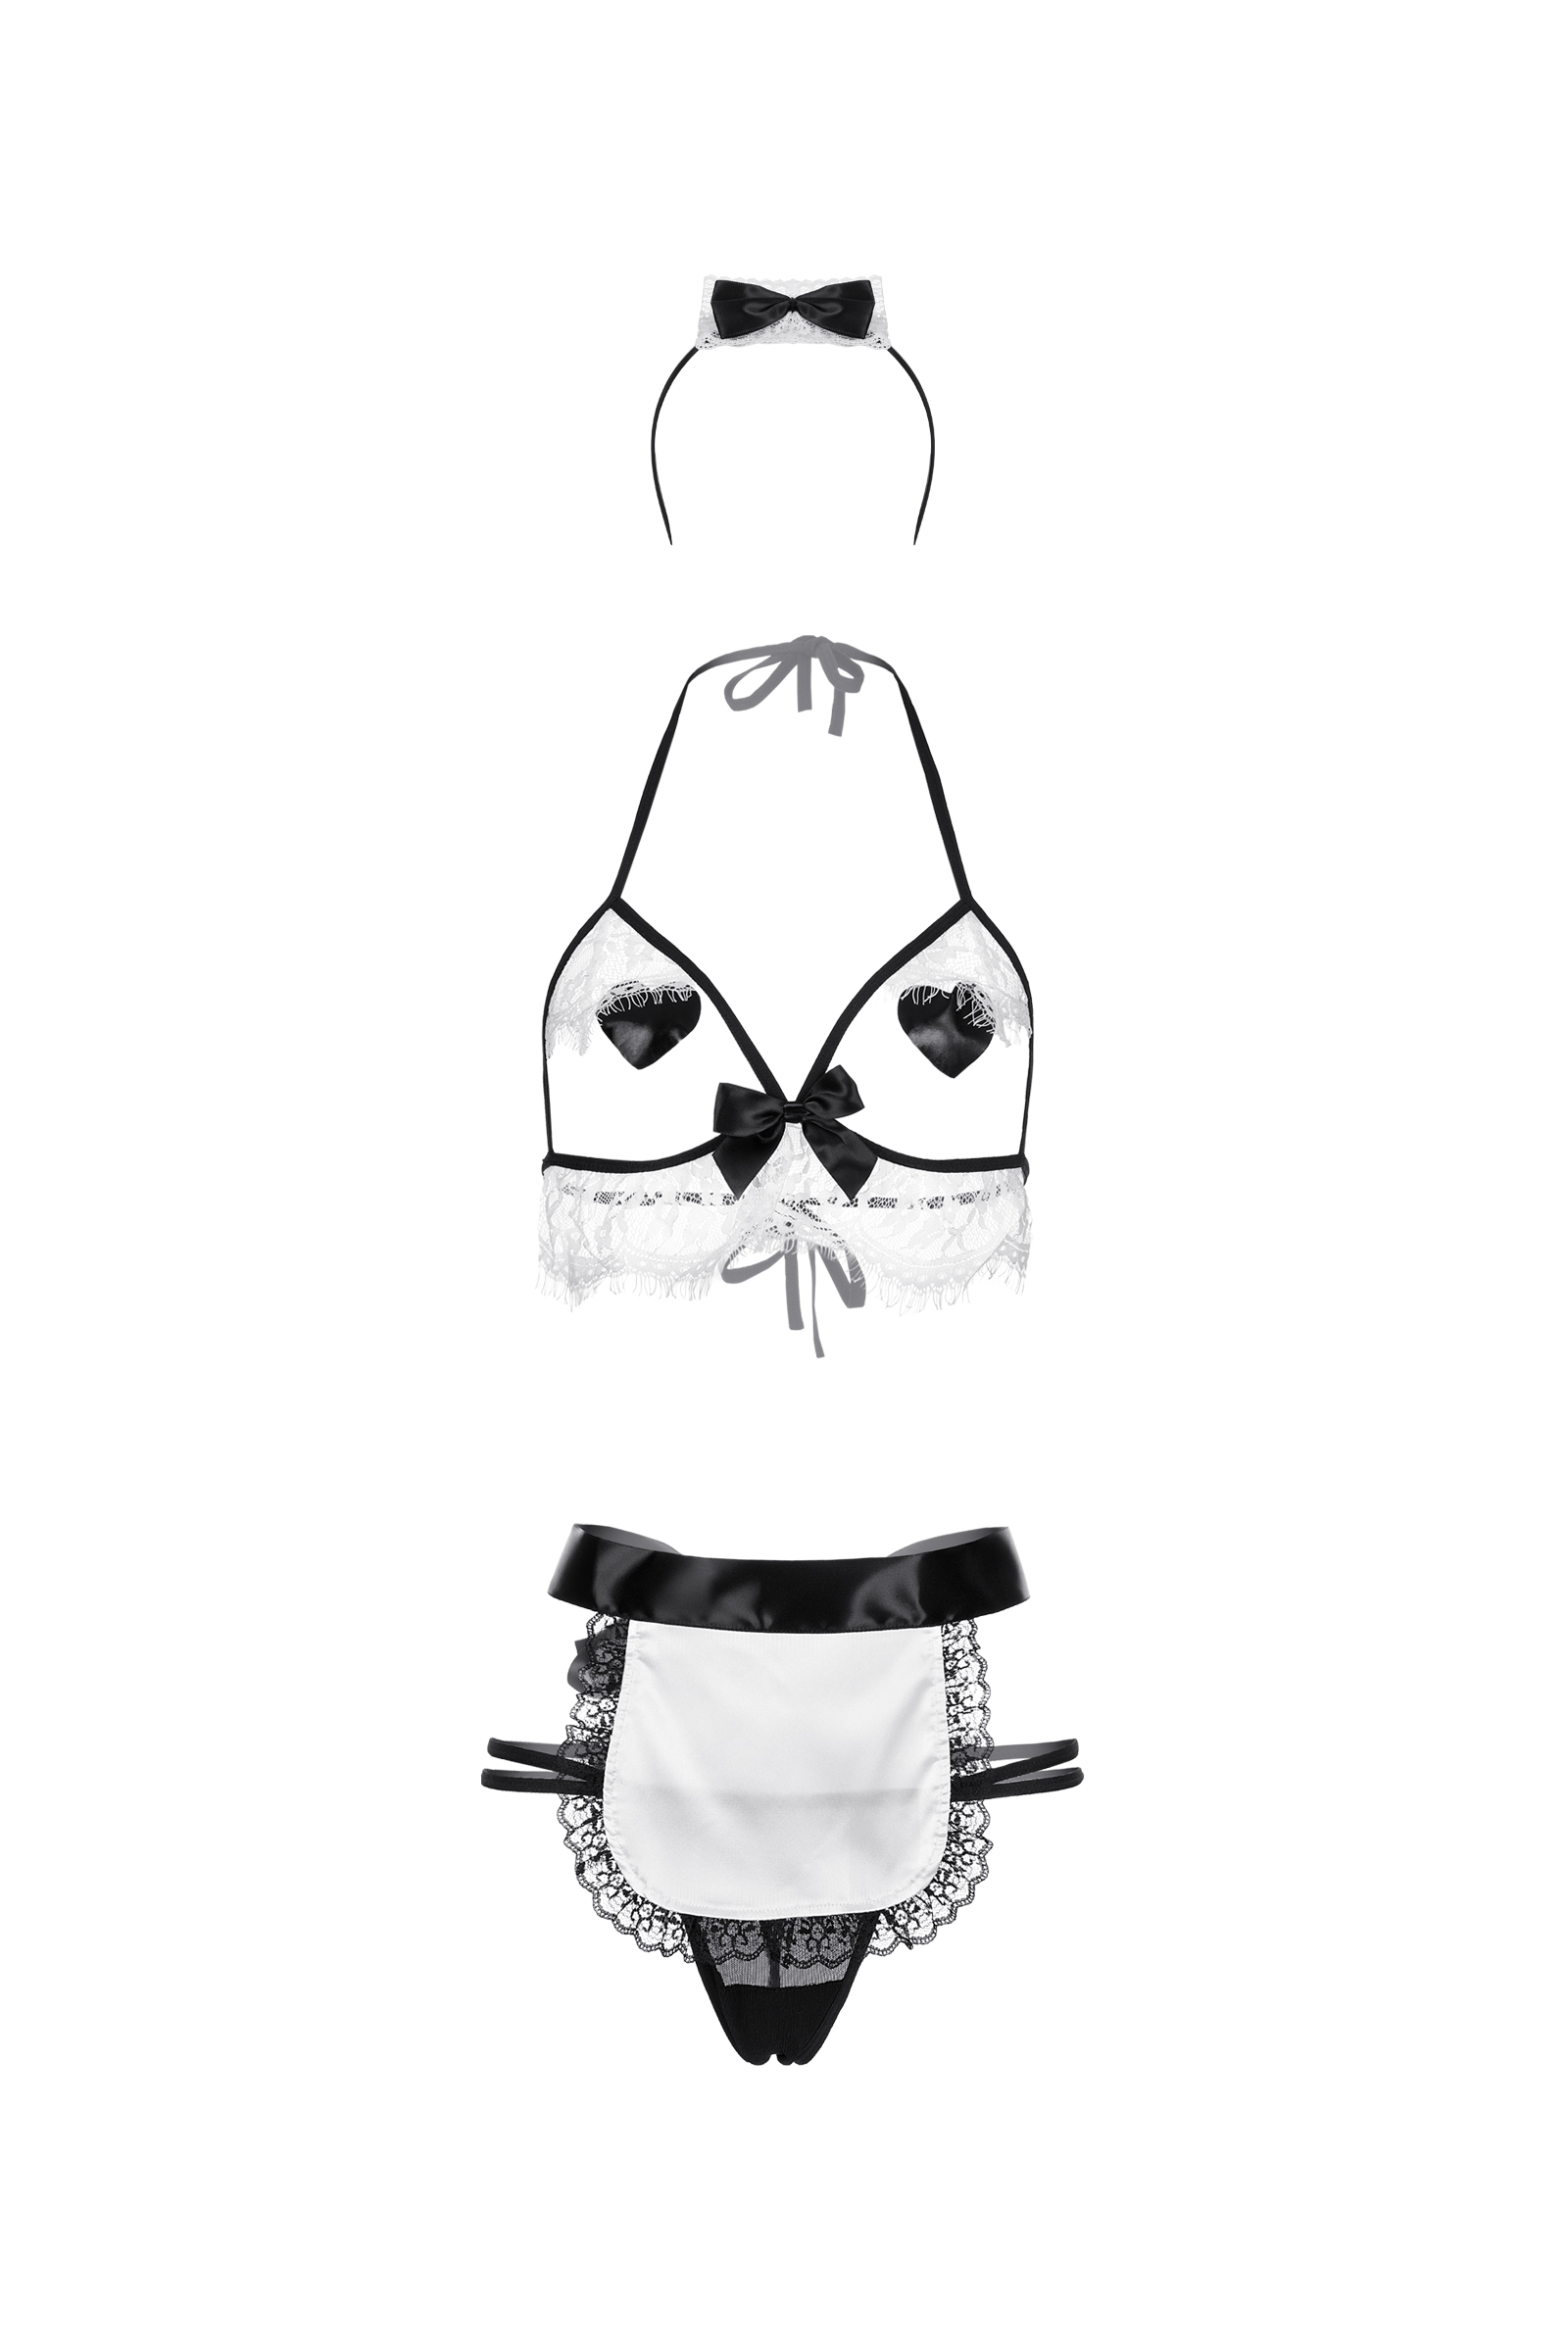 Костюм горничной Candy Girl Ciara (бюстгальтер,стринги,наклейки на грудь,фартук,головной убор), черн. Фото N3